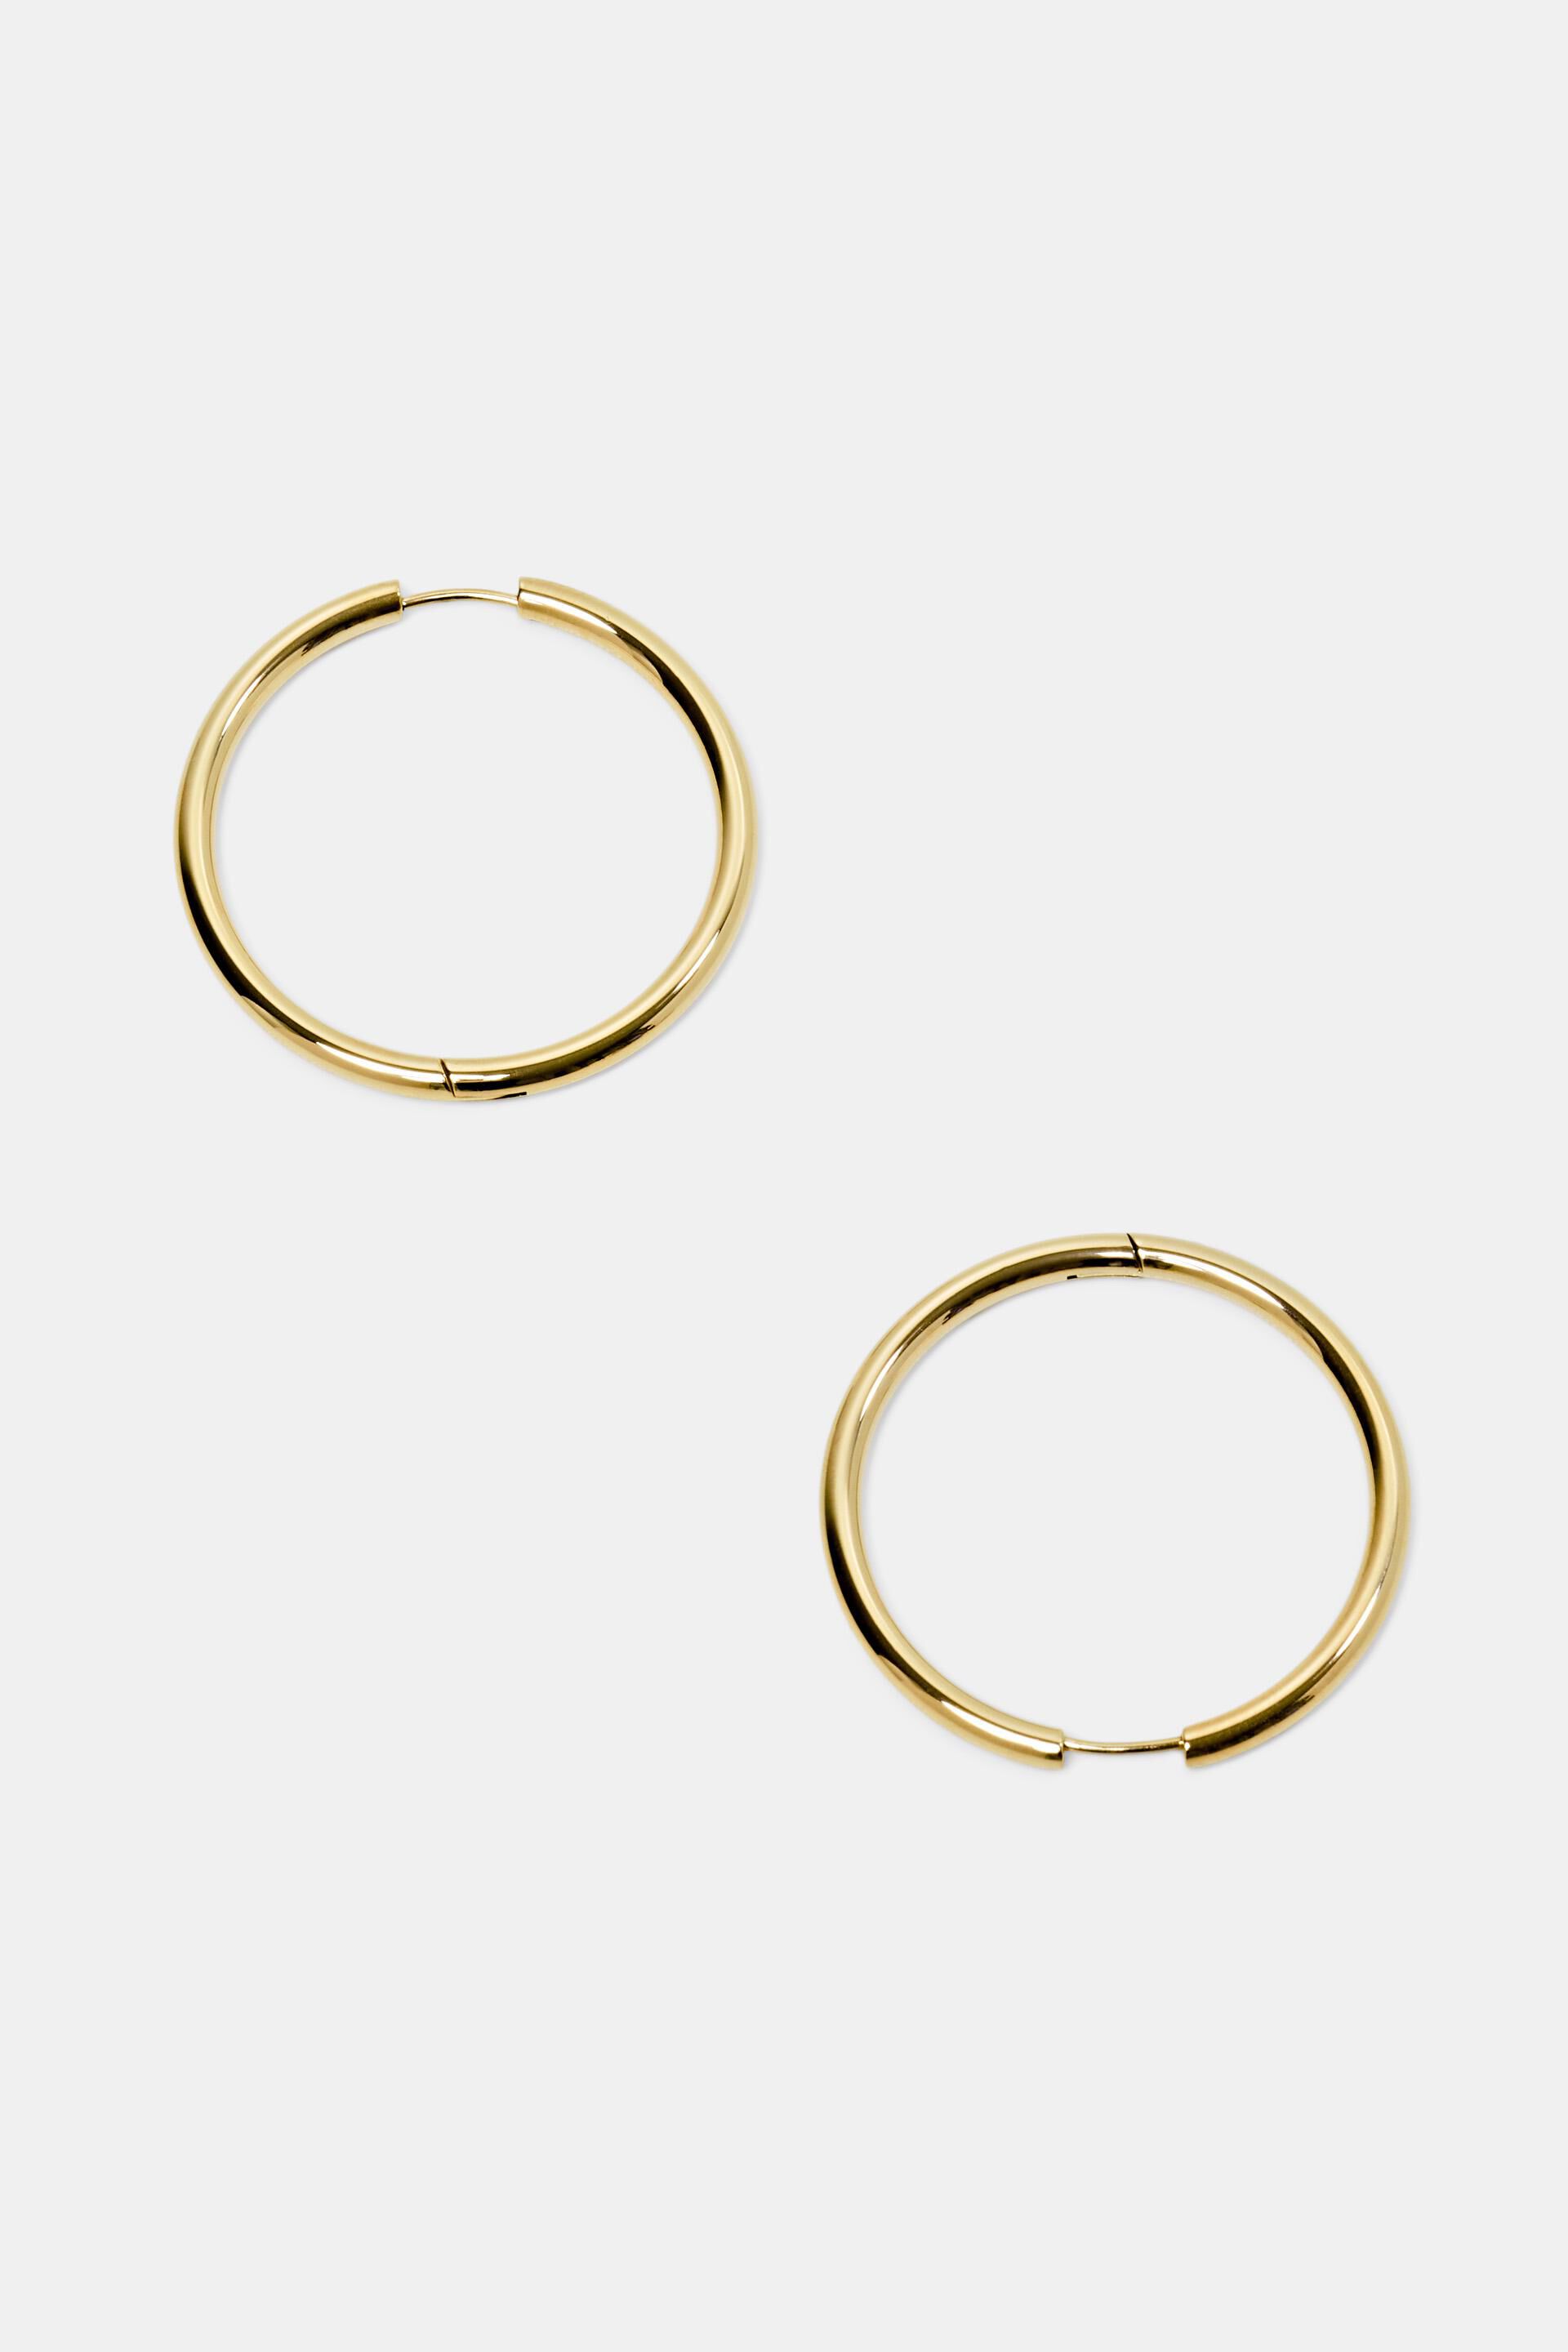 Esprit Online Store Hoop earrings, stainless steel